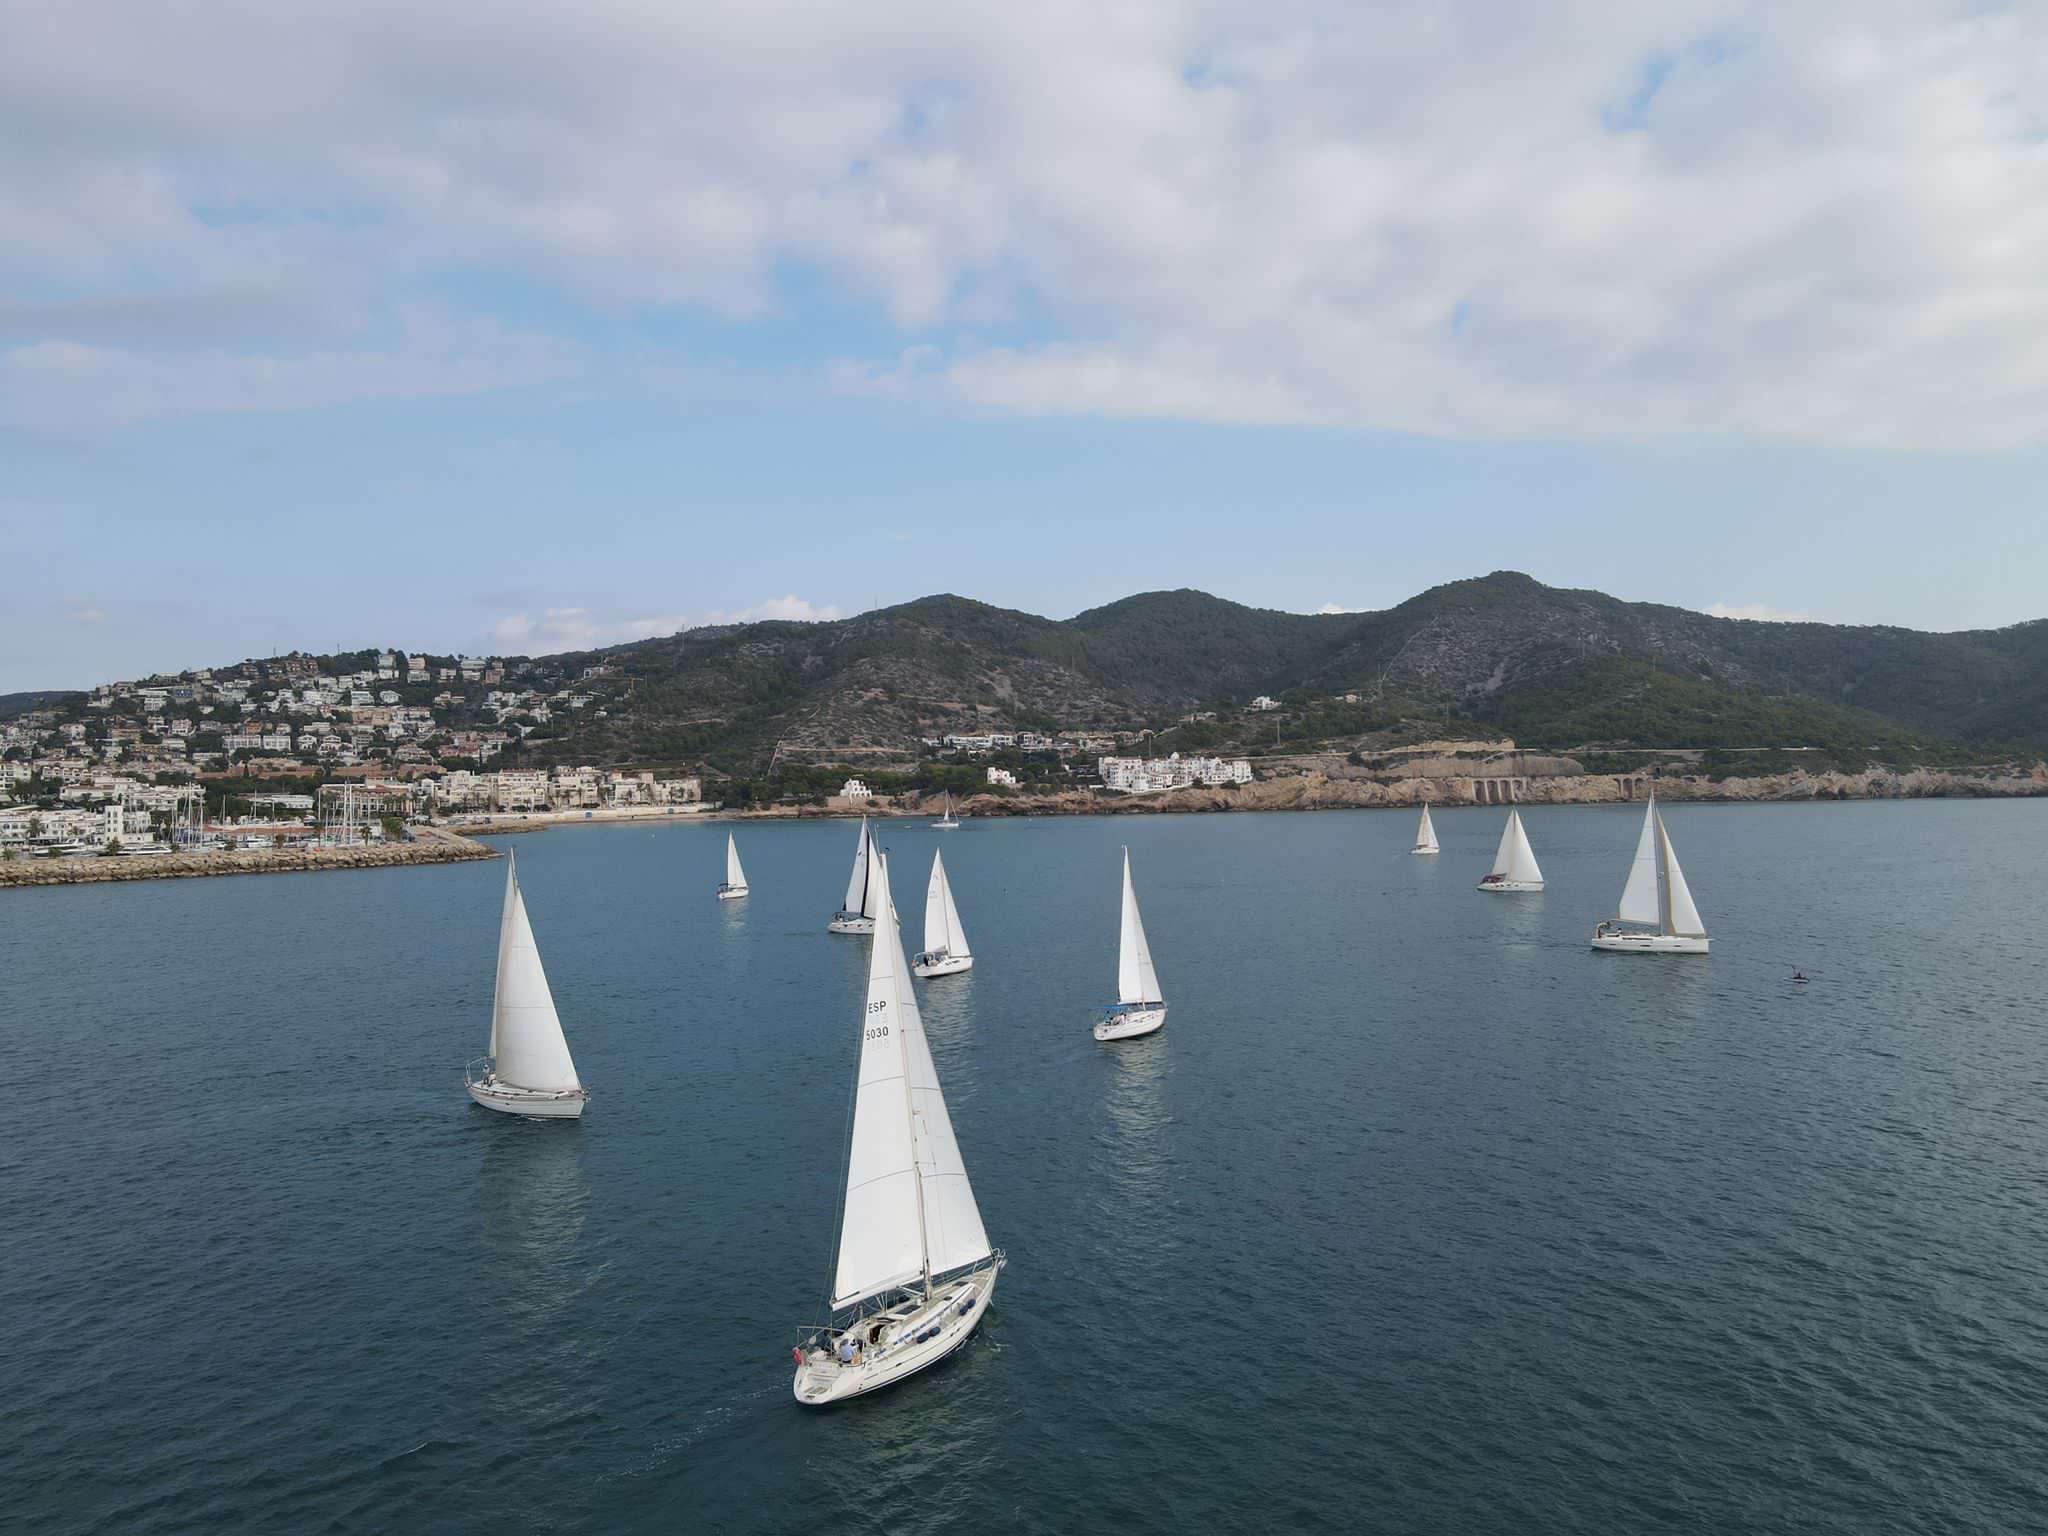 El Club Nàutic Port de Sitges organiza la regata de otoño